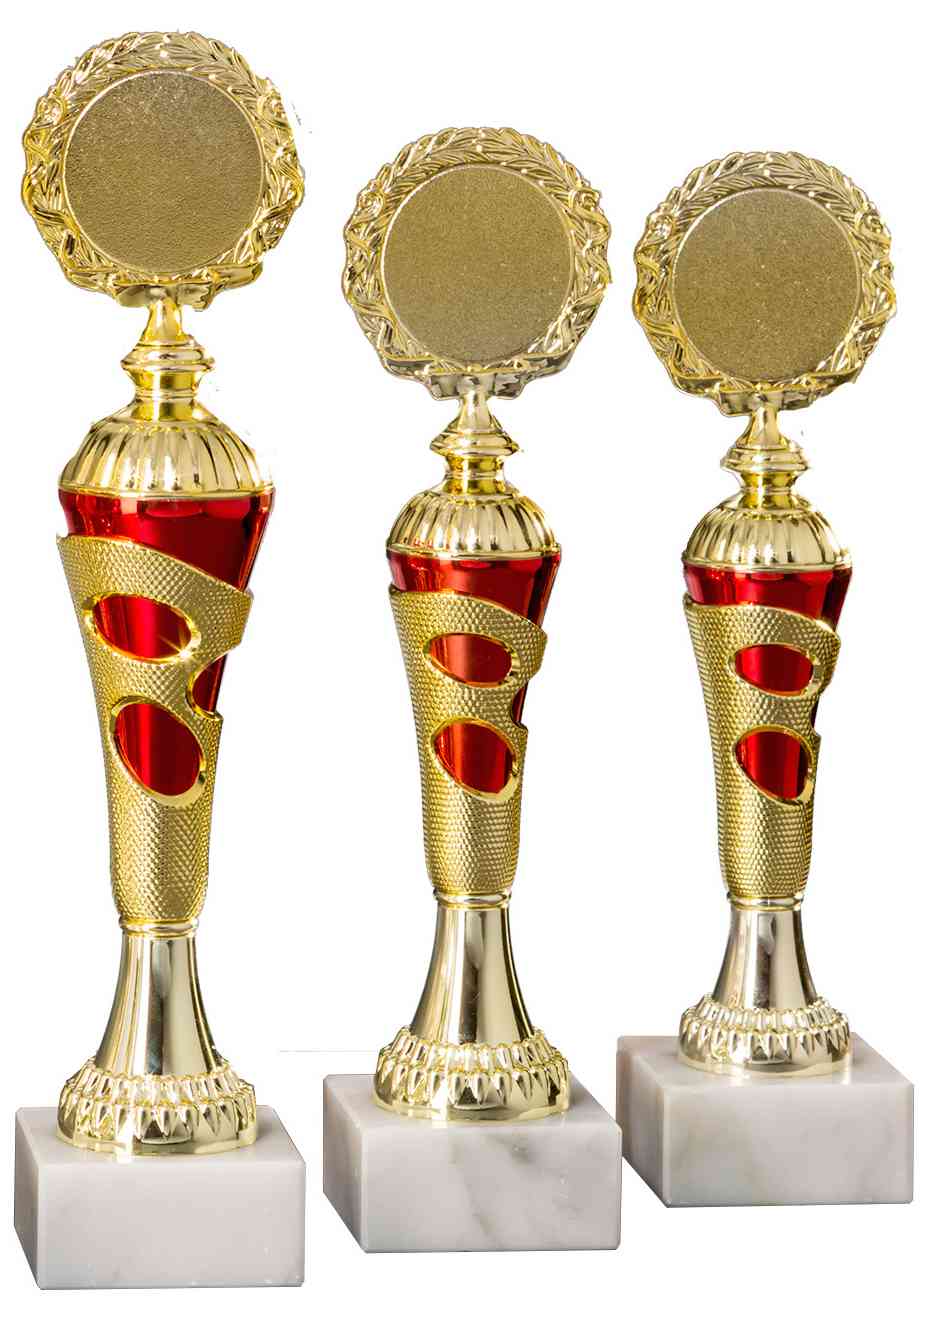 Drei goldene und rote Pokale Lörrach 3-er Pokalserie 255 mm – 290 mm PK754720-3-E50 mit verzierten runden Spitzen auf weißen Marmorsockeln, isoliert auf weißem Hintergrund.